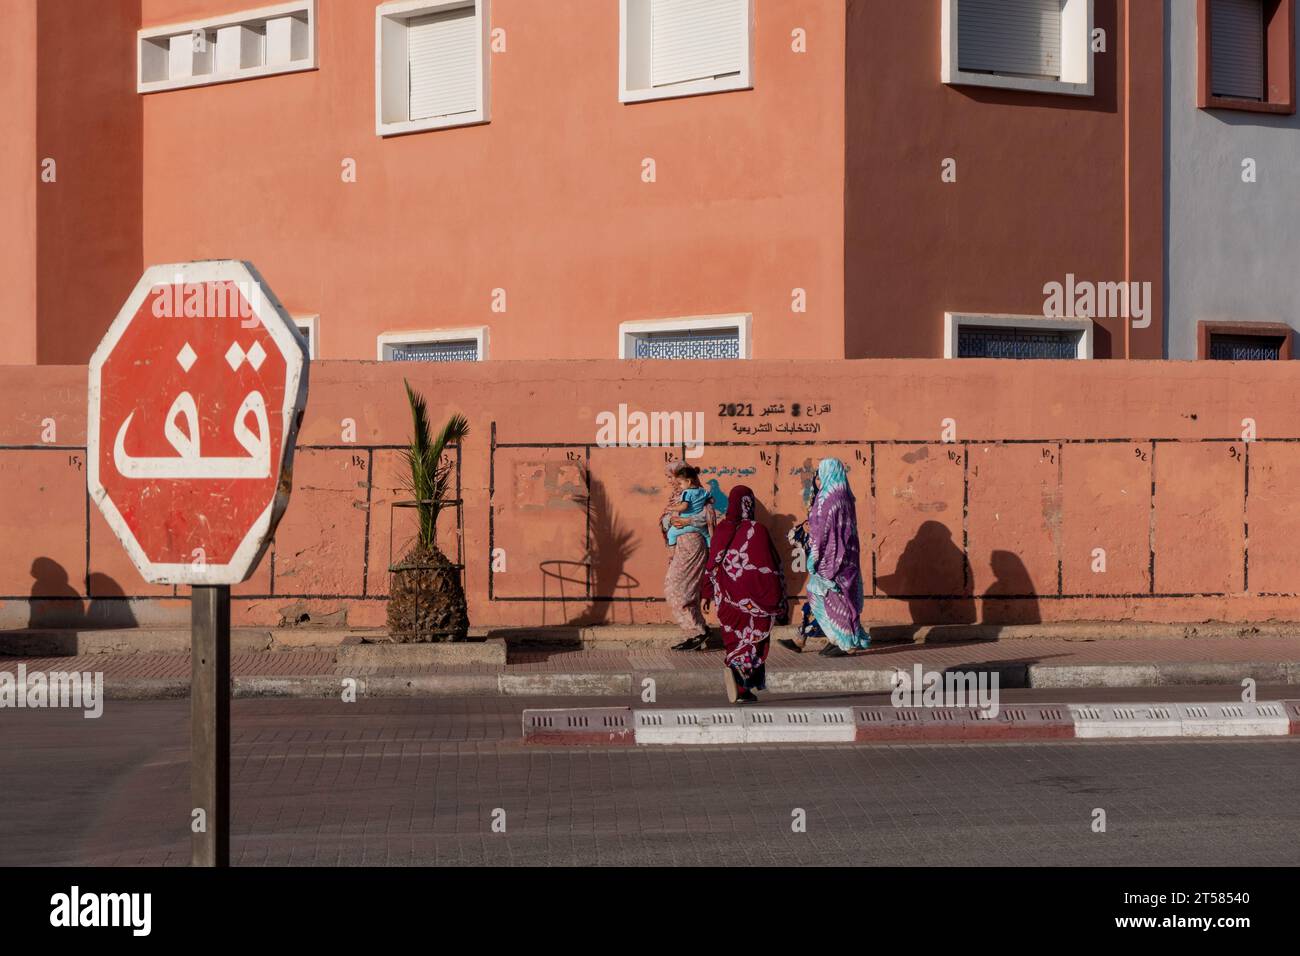 street in Guelmin, Maroc Stock Photo